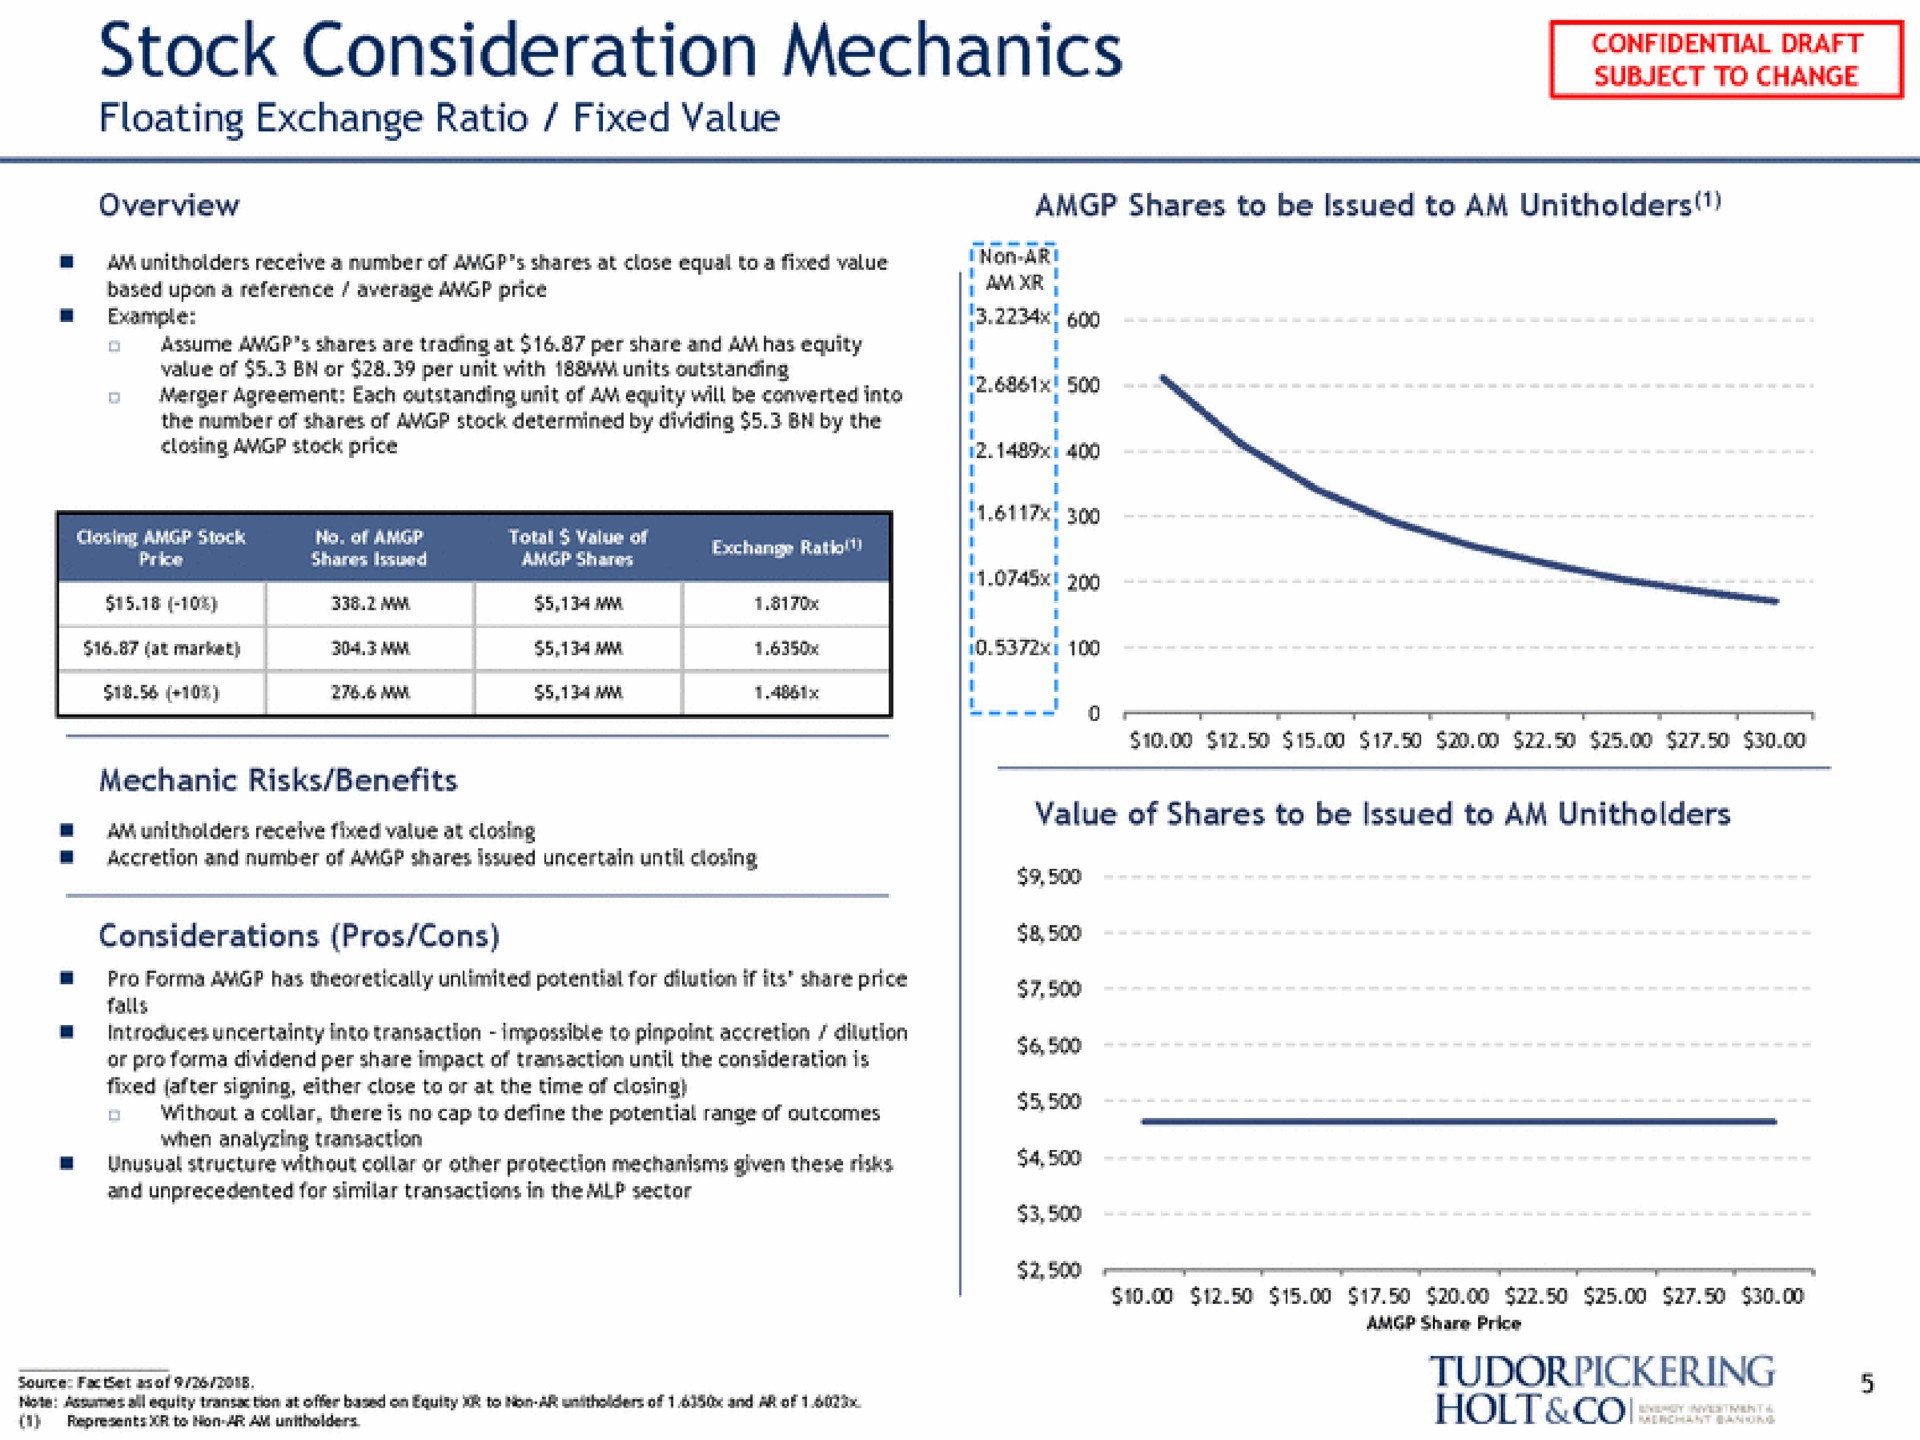 stock consideration mechanics floating exchange ratio fixed value | Tudor, Pickering, Holt & Co